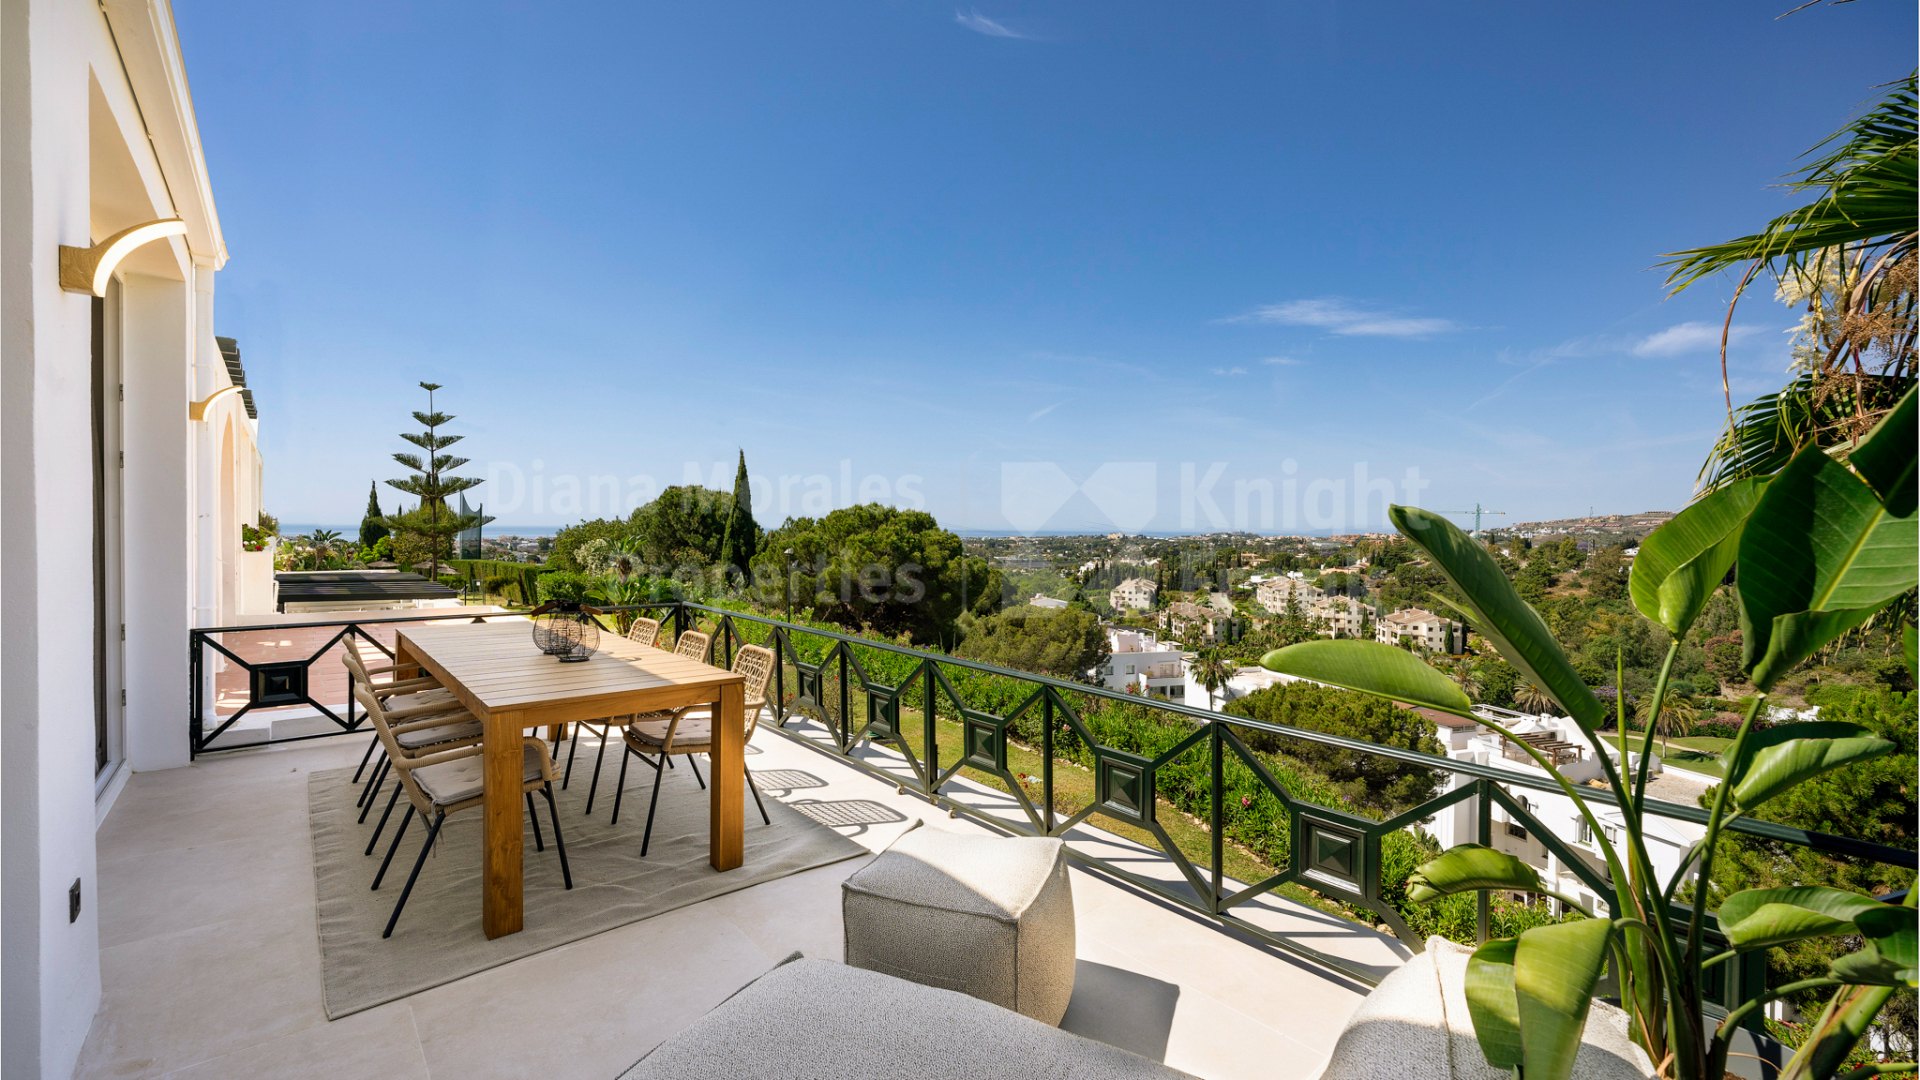 Terrazas de la Quinta, Квартира с прекрасным видом на море, полностью отремонтирована.